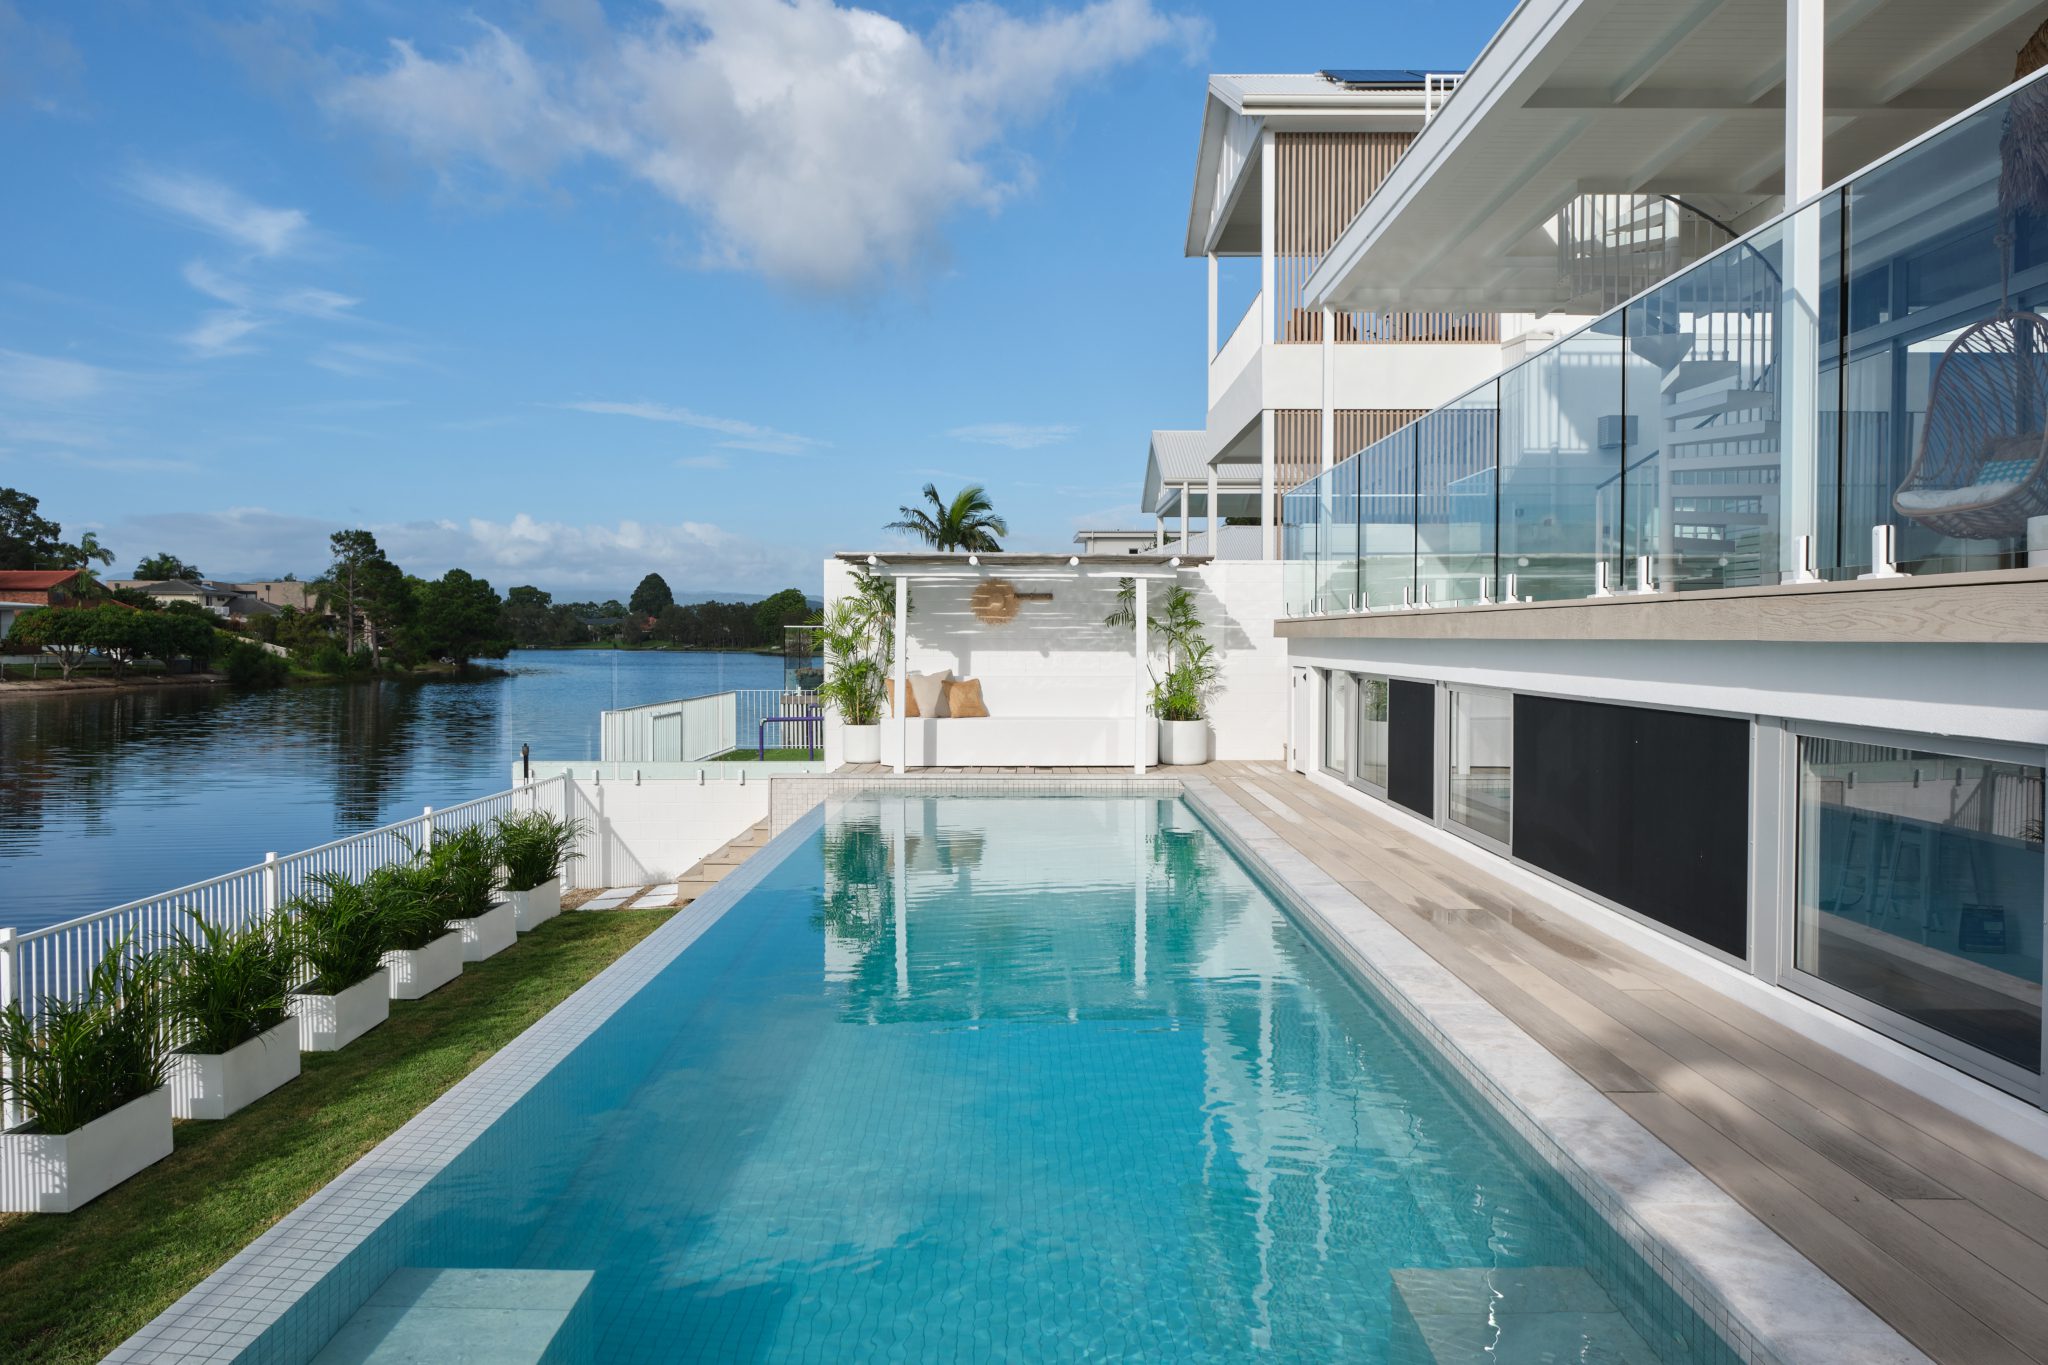 Selamanya Burleigh – Luxury Coastal Resort Style House in Burleigh